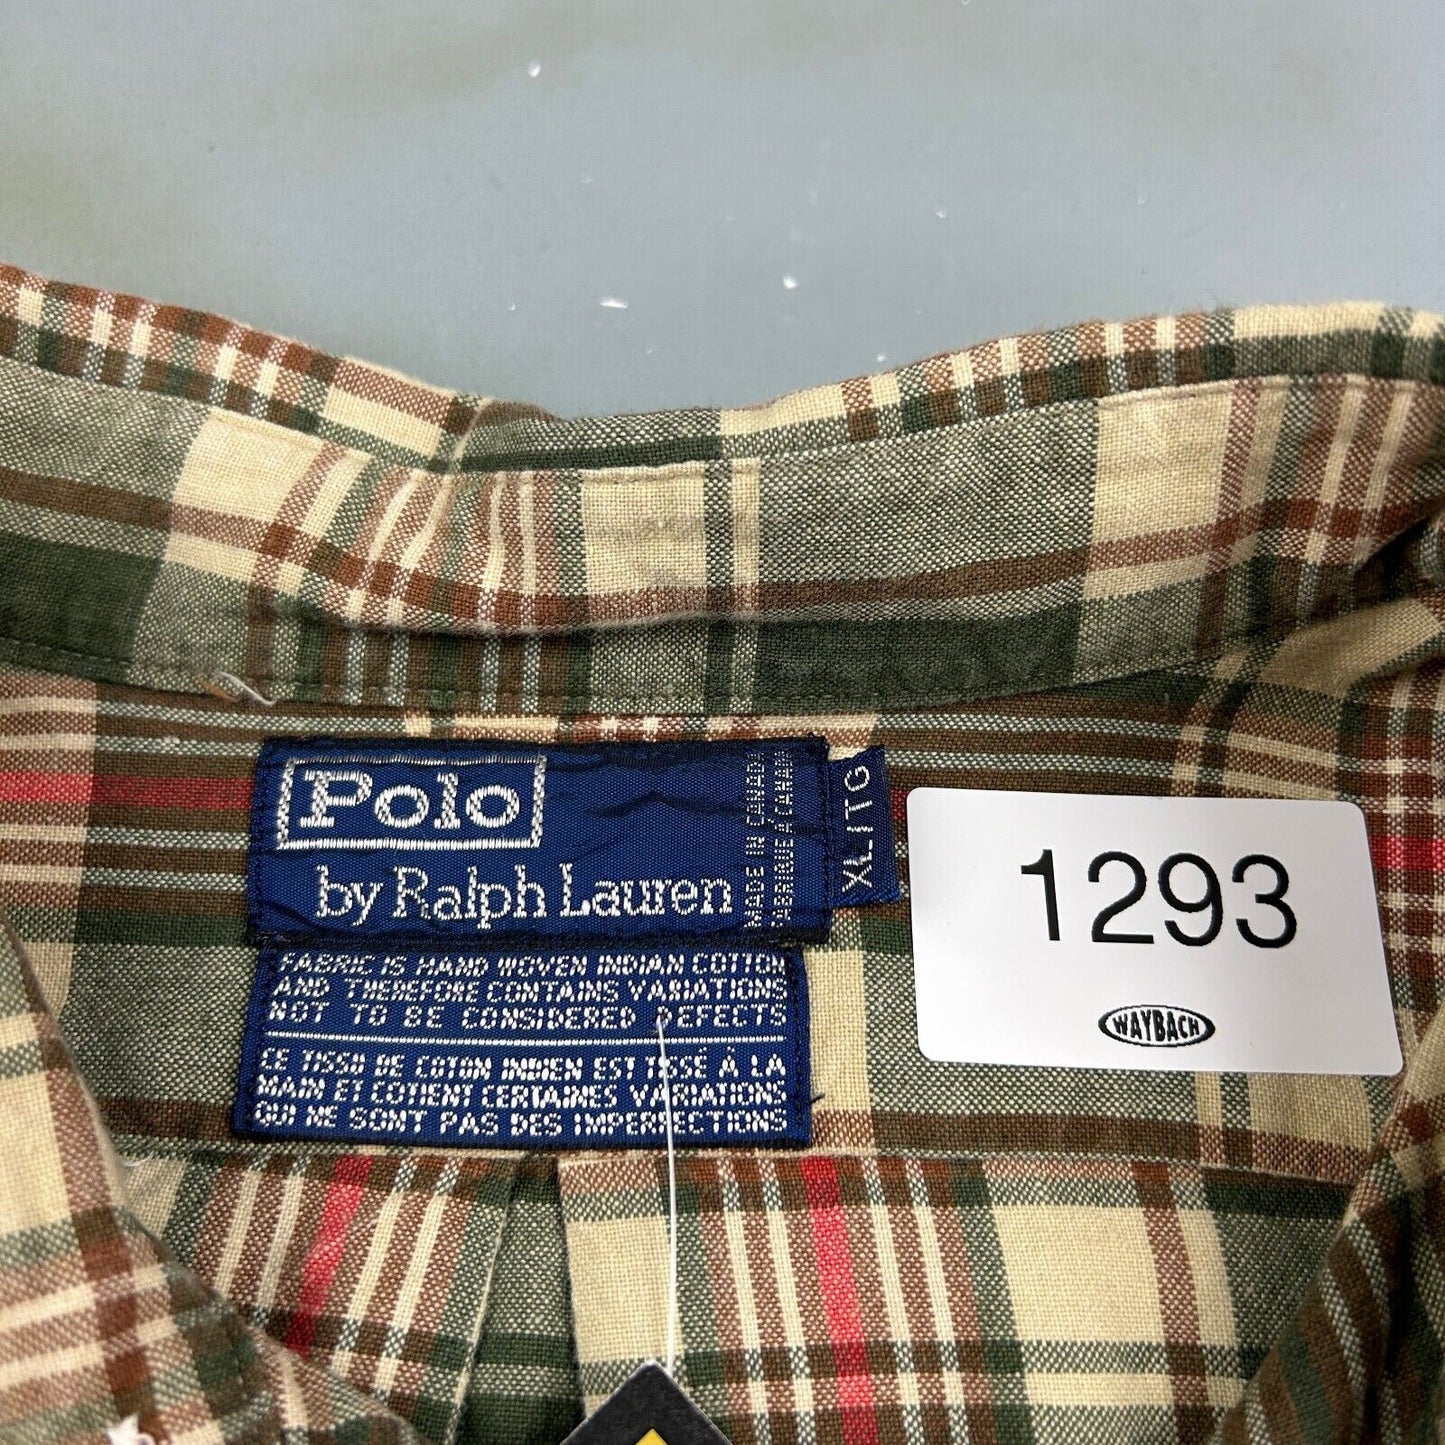 VINTAGE 90s Ralph Lauren Polo Plaid Flannel Button Up Shirt sz XL Adult